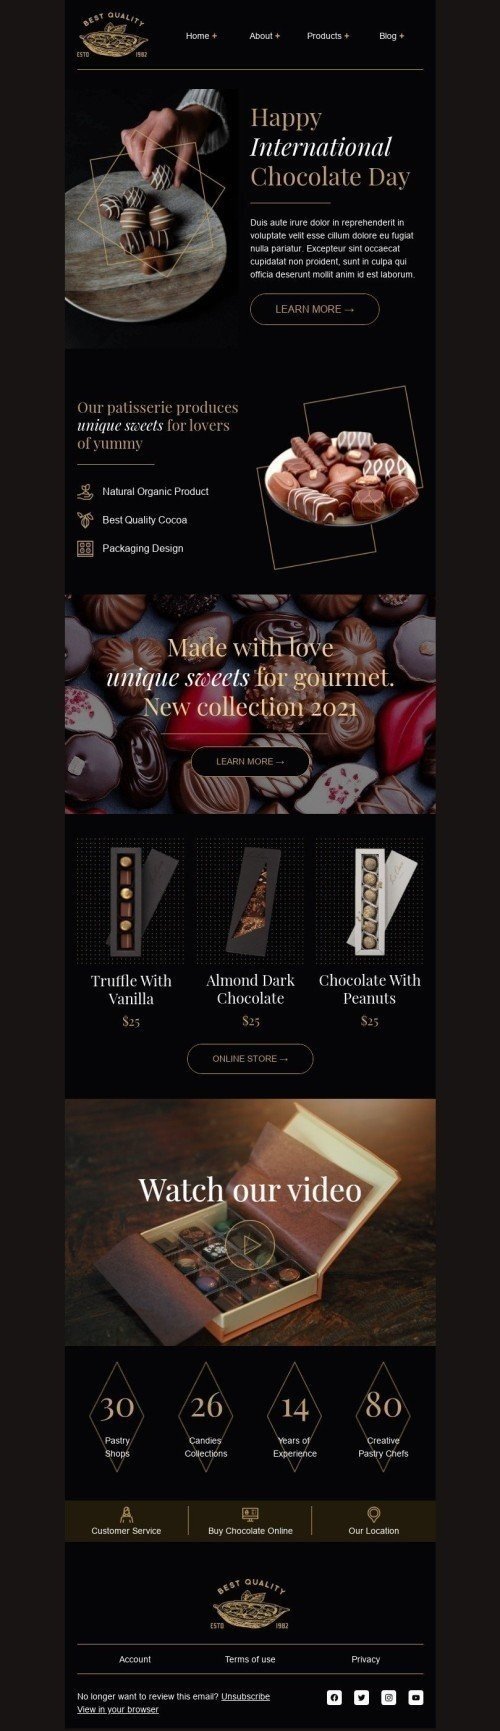 Modelo de E-mail de «Feito com amor» de Dia Internacional do Chocolate para a indústria de Alimentação Visualização de dispositivo móvel